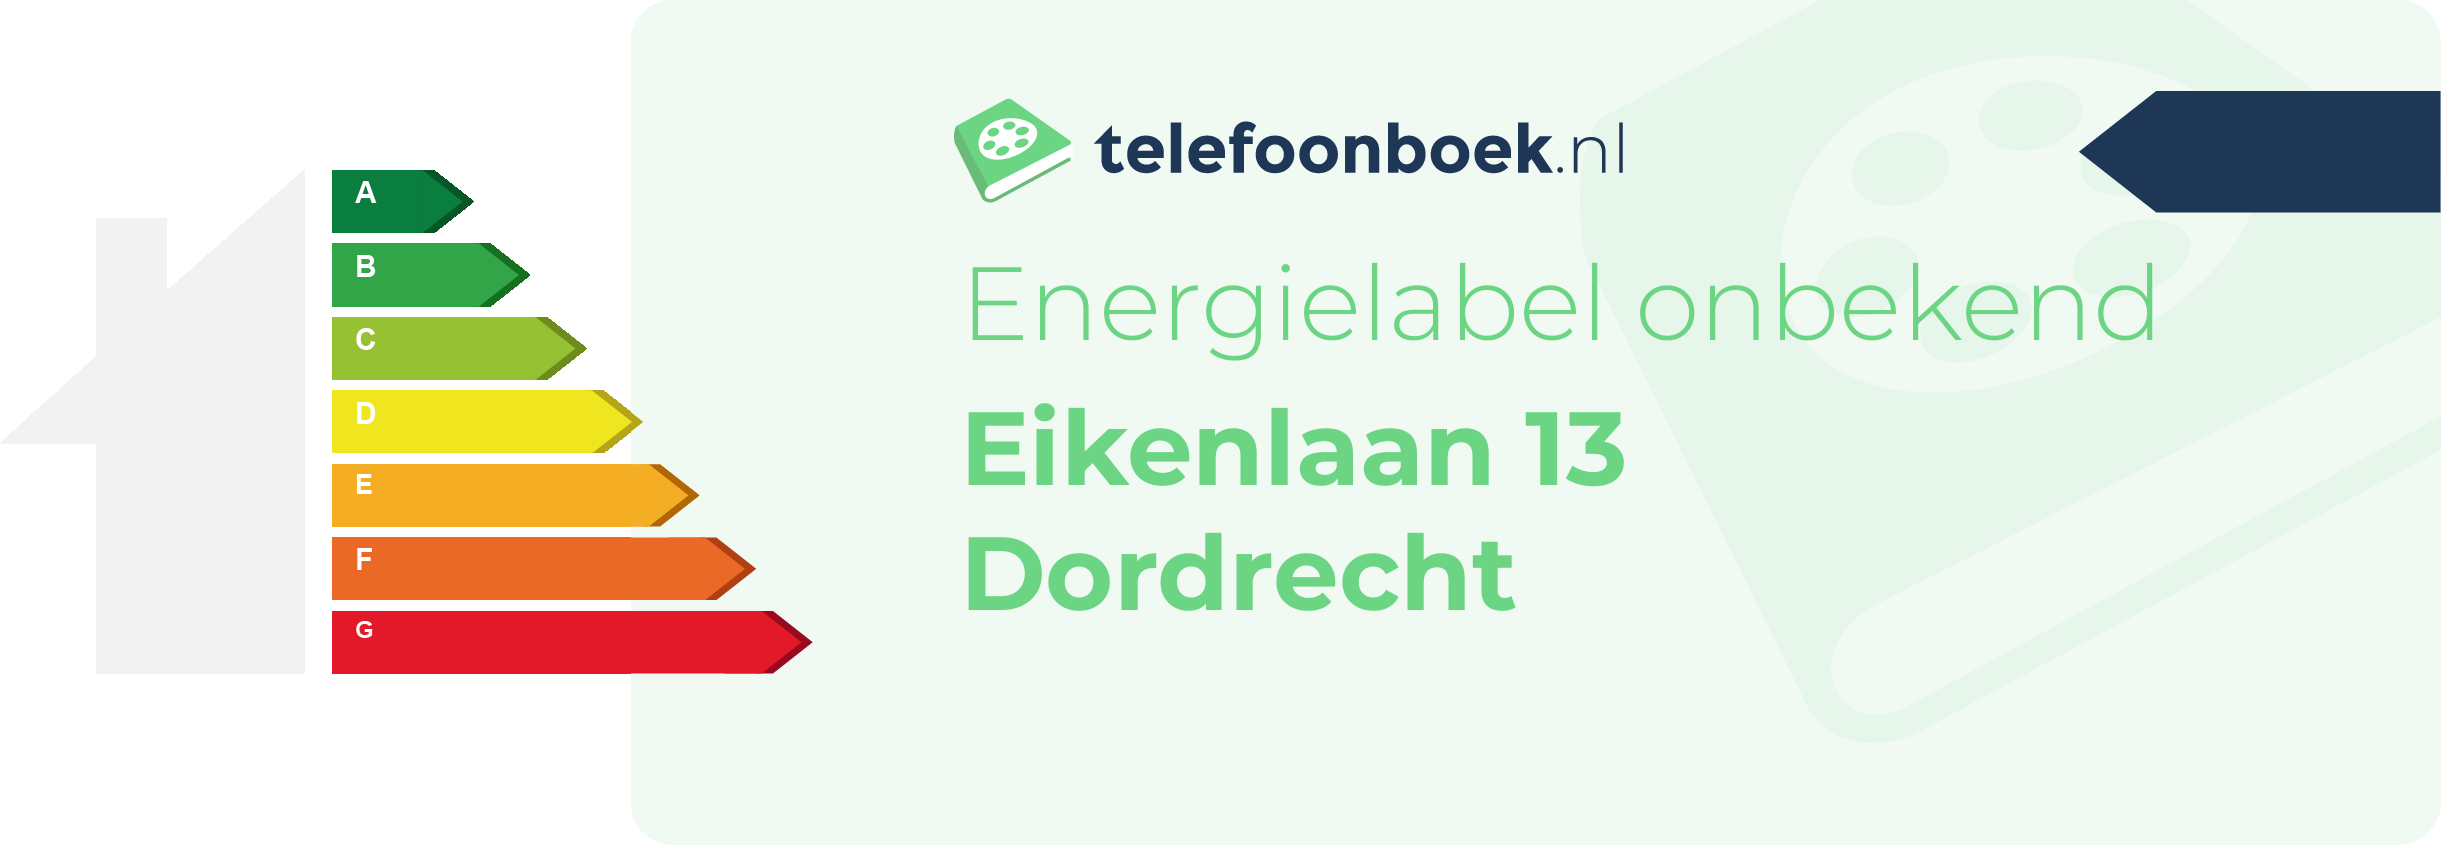 Energielabel Eikenlaan 13 Dordrecht